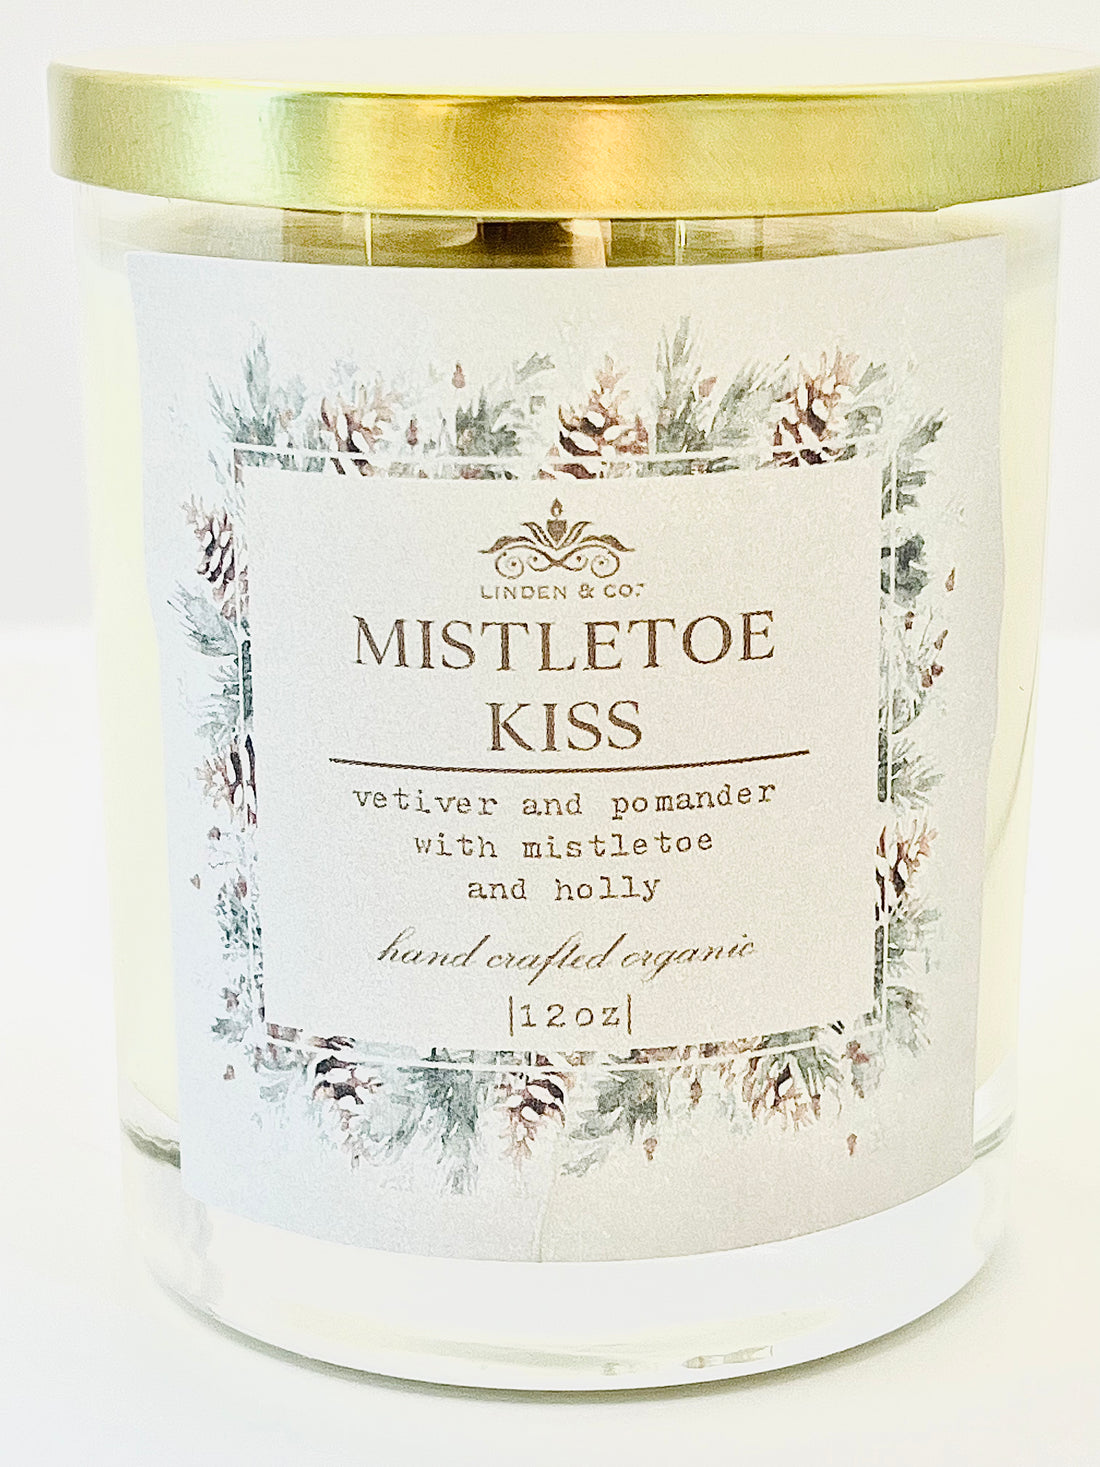 Mistletoe kiss